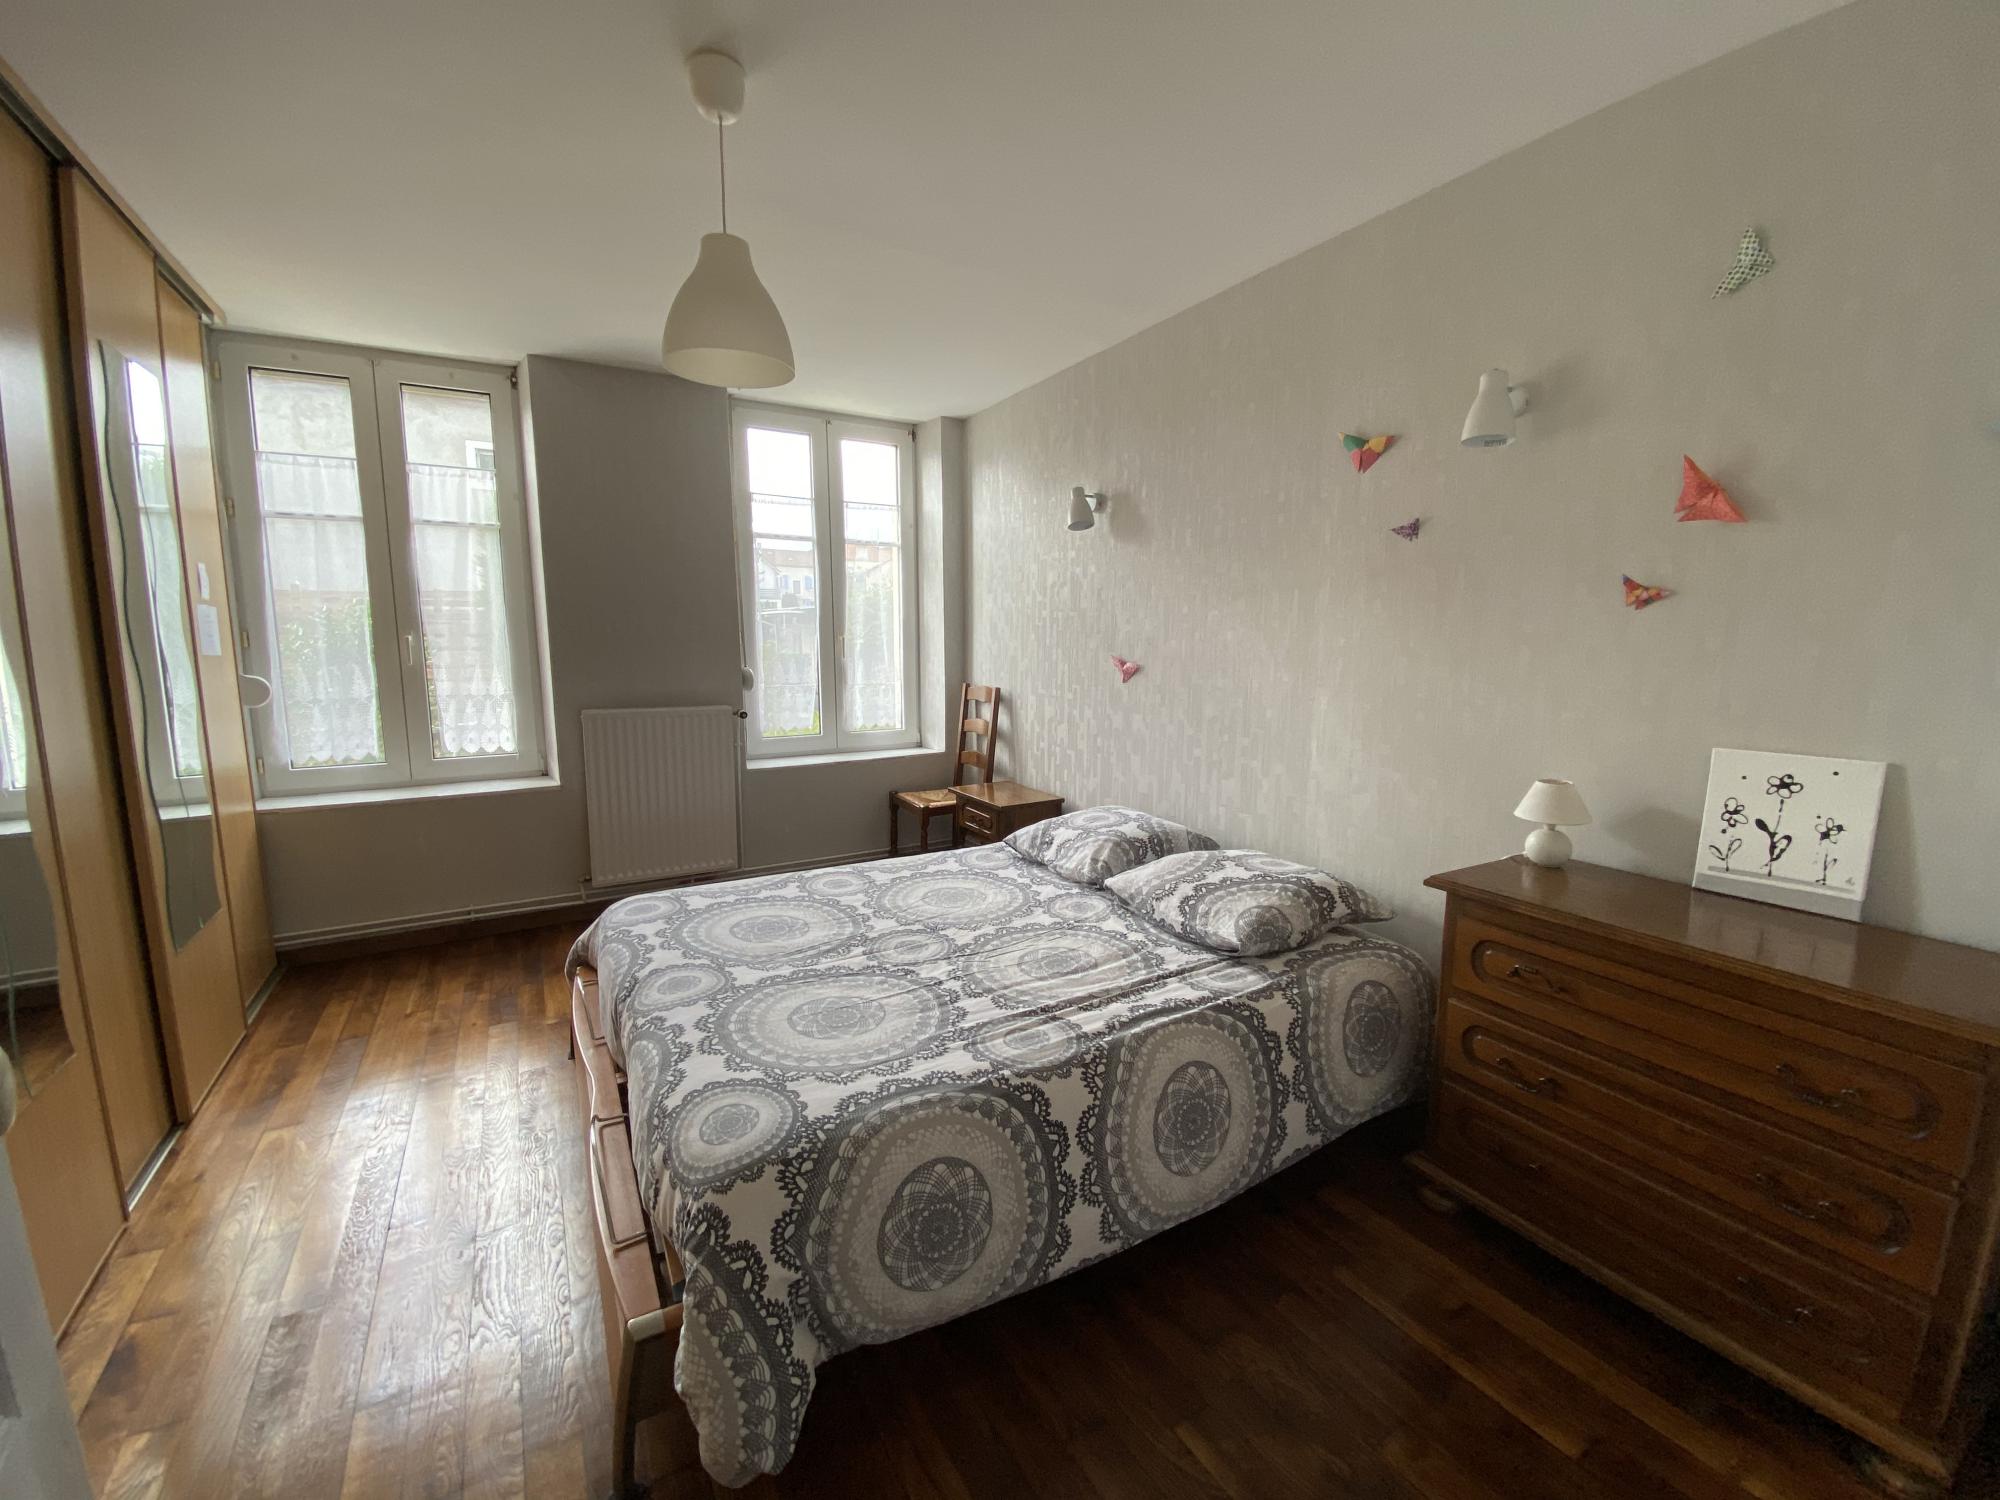 Grande chambre confortable appartement a louer meublé de tourisme entre Metz et Nancy